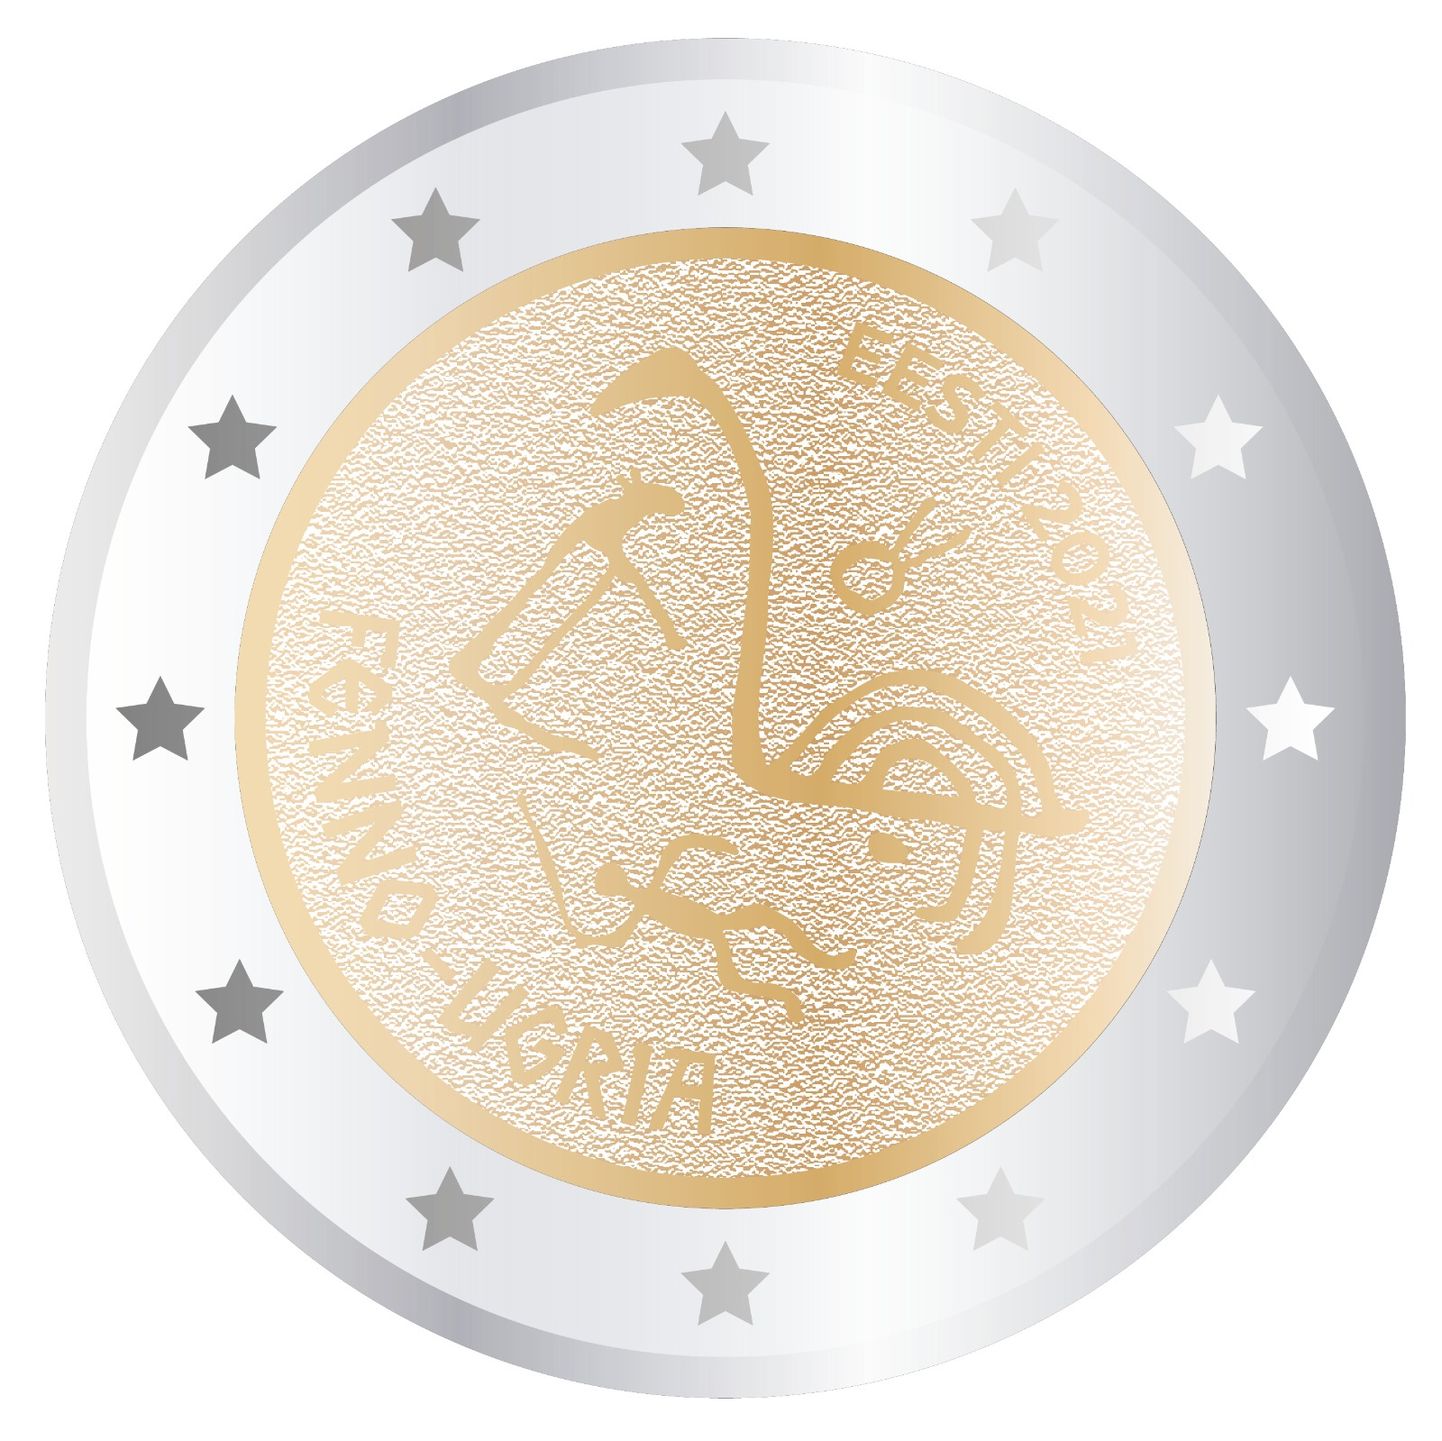 Eesti-teemaline euromünt soomeugri ainetel